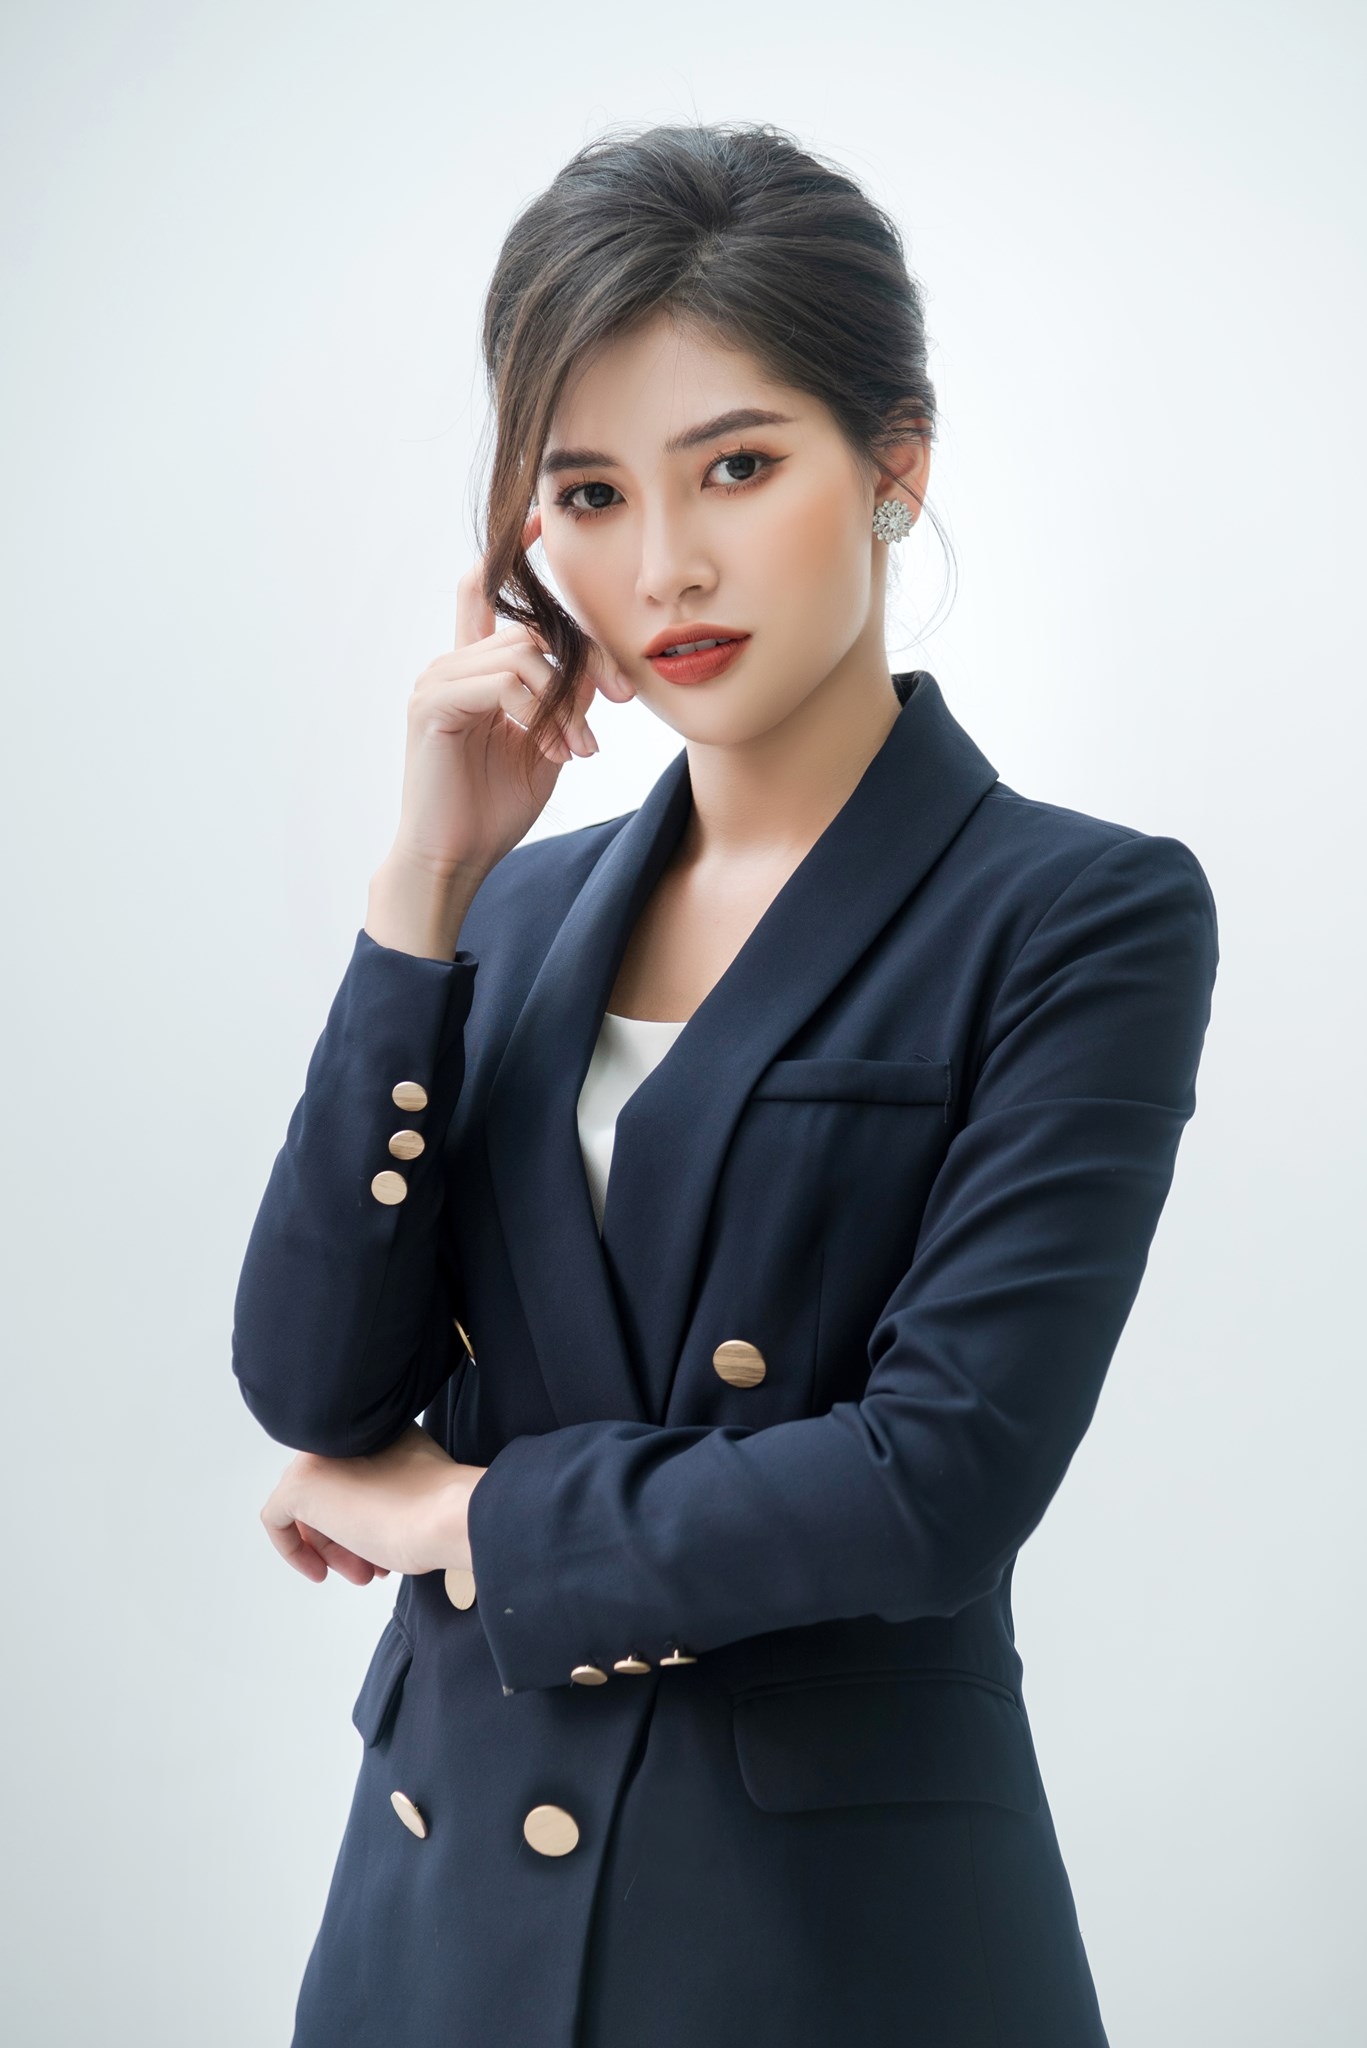 Phạm Hoàng Thu Uyên - nữ CEO thi Miss Universe Vietnam: 18 tuổi mồ côi, 19 tuổi kiếm 200 triệu/tháng - Ảnh 6